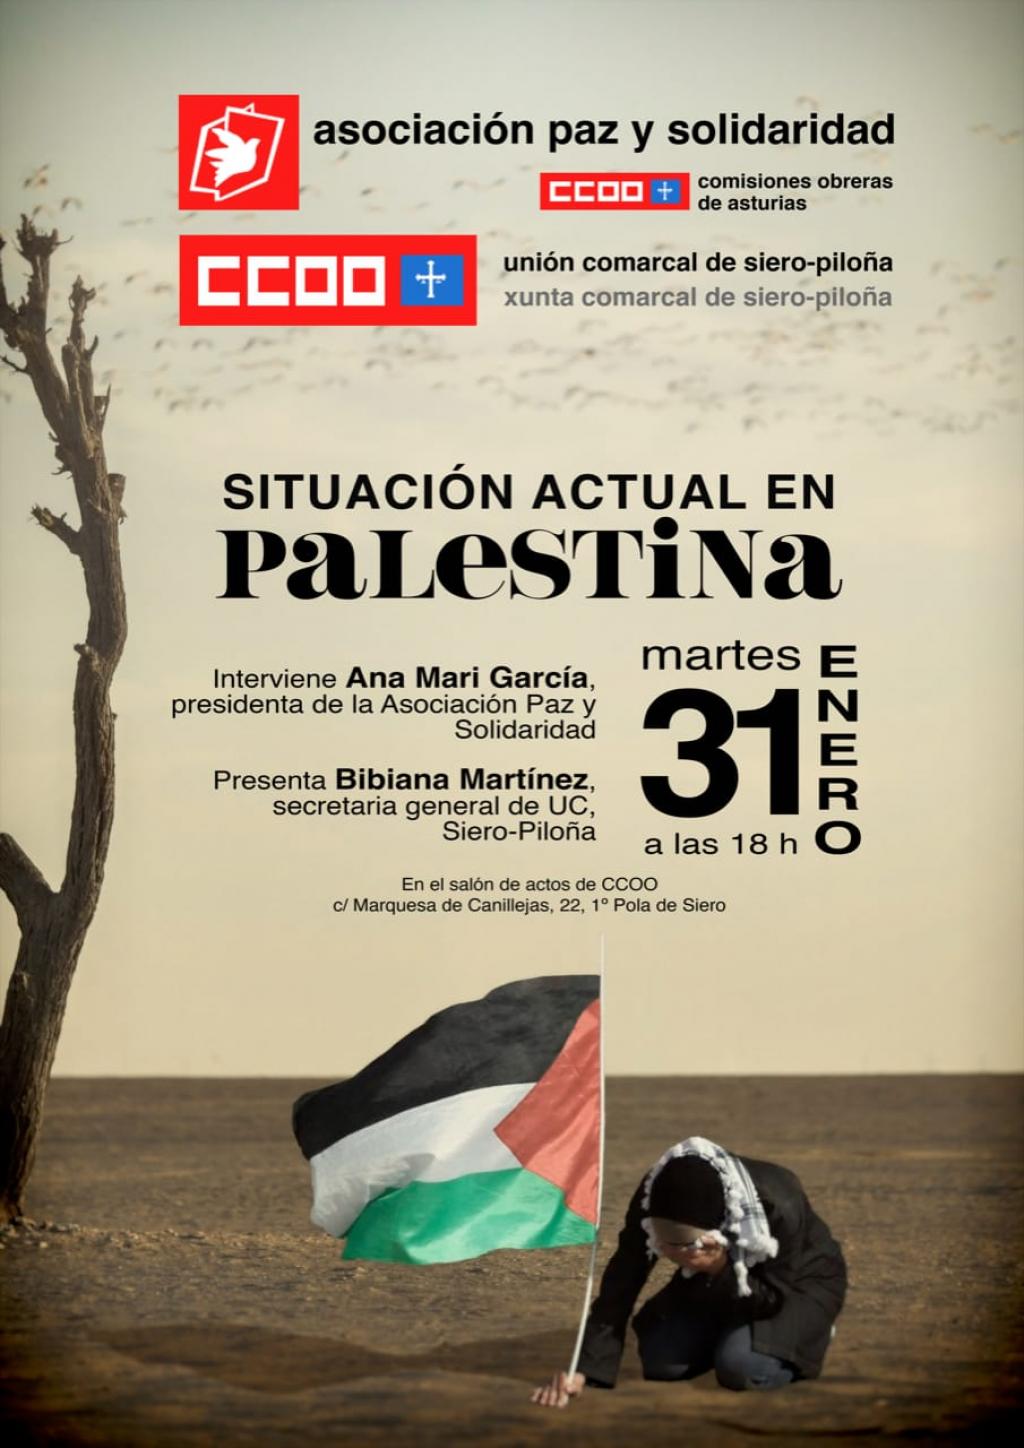 El Tapin - CCOO Siero-Piloña organiza un encuentro para hablar de la situación de Palestina el martes 31 de enero